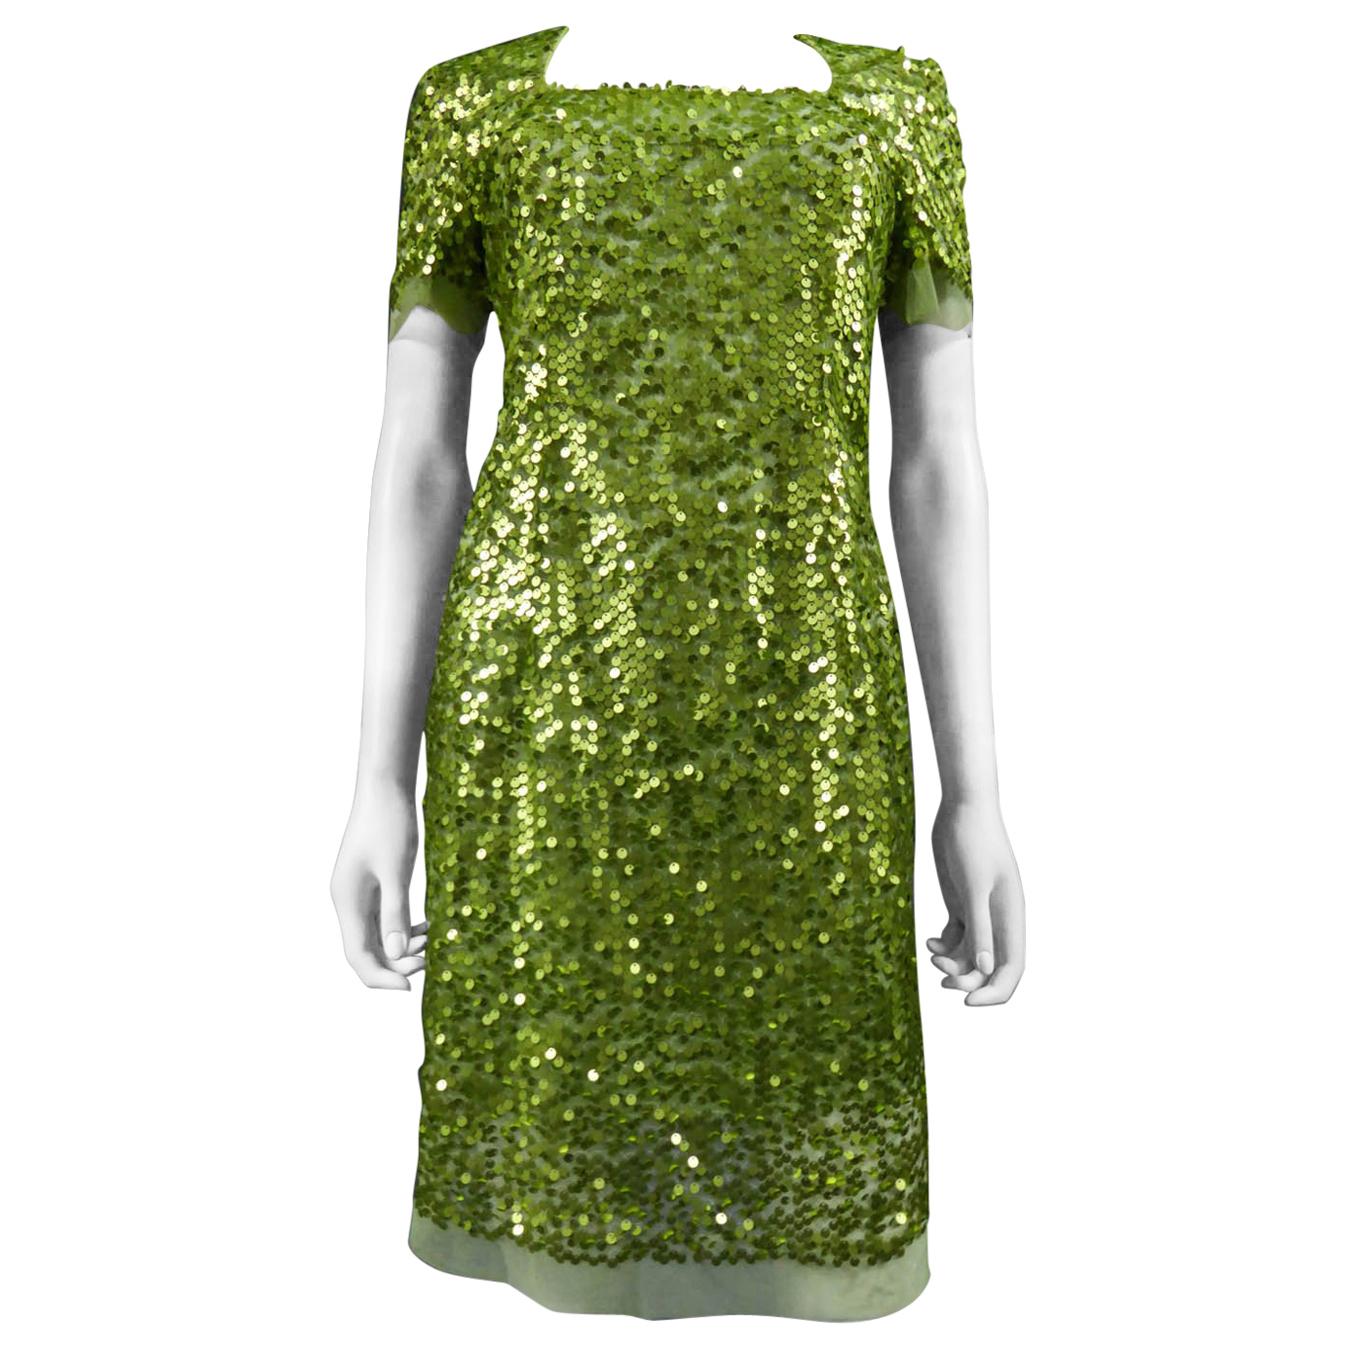 Um 1990
Frankreich

Kurzes Kleid aus grünem Tüll, bestickt mit schillerndem grünem Glitter. Der quadratische Kragen ist eng anliegend und wird am Rücken mit einem Reißverschluss geschlossen. Innenfutter aus grünem Kunststoff. Kein Etikett, sondern